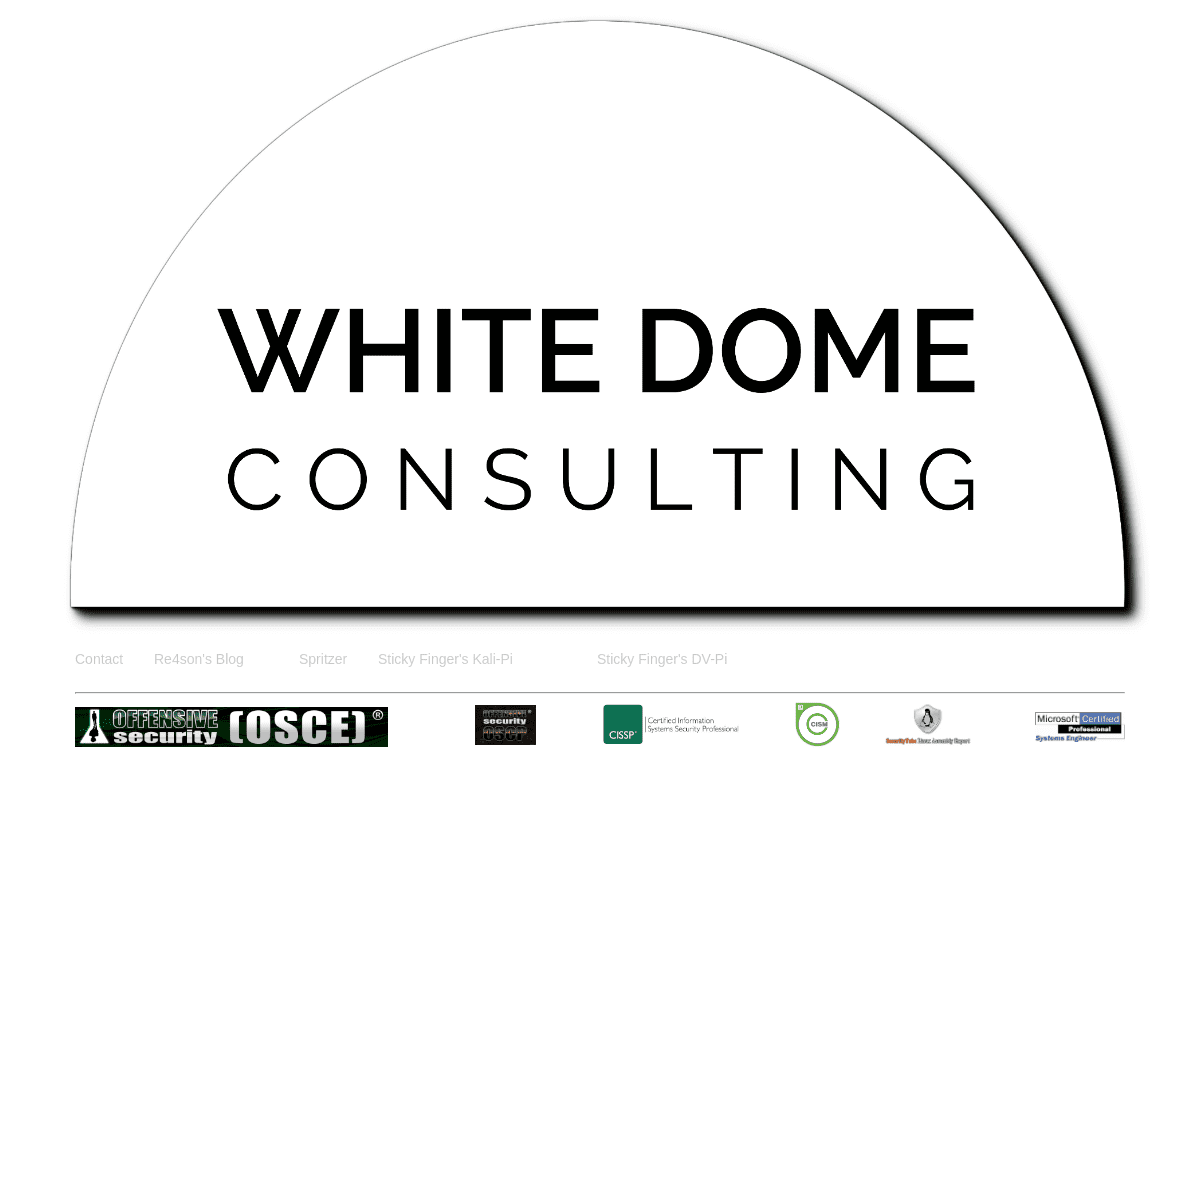 A complete backup of whitedome.com.au